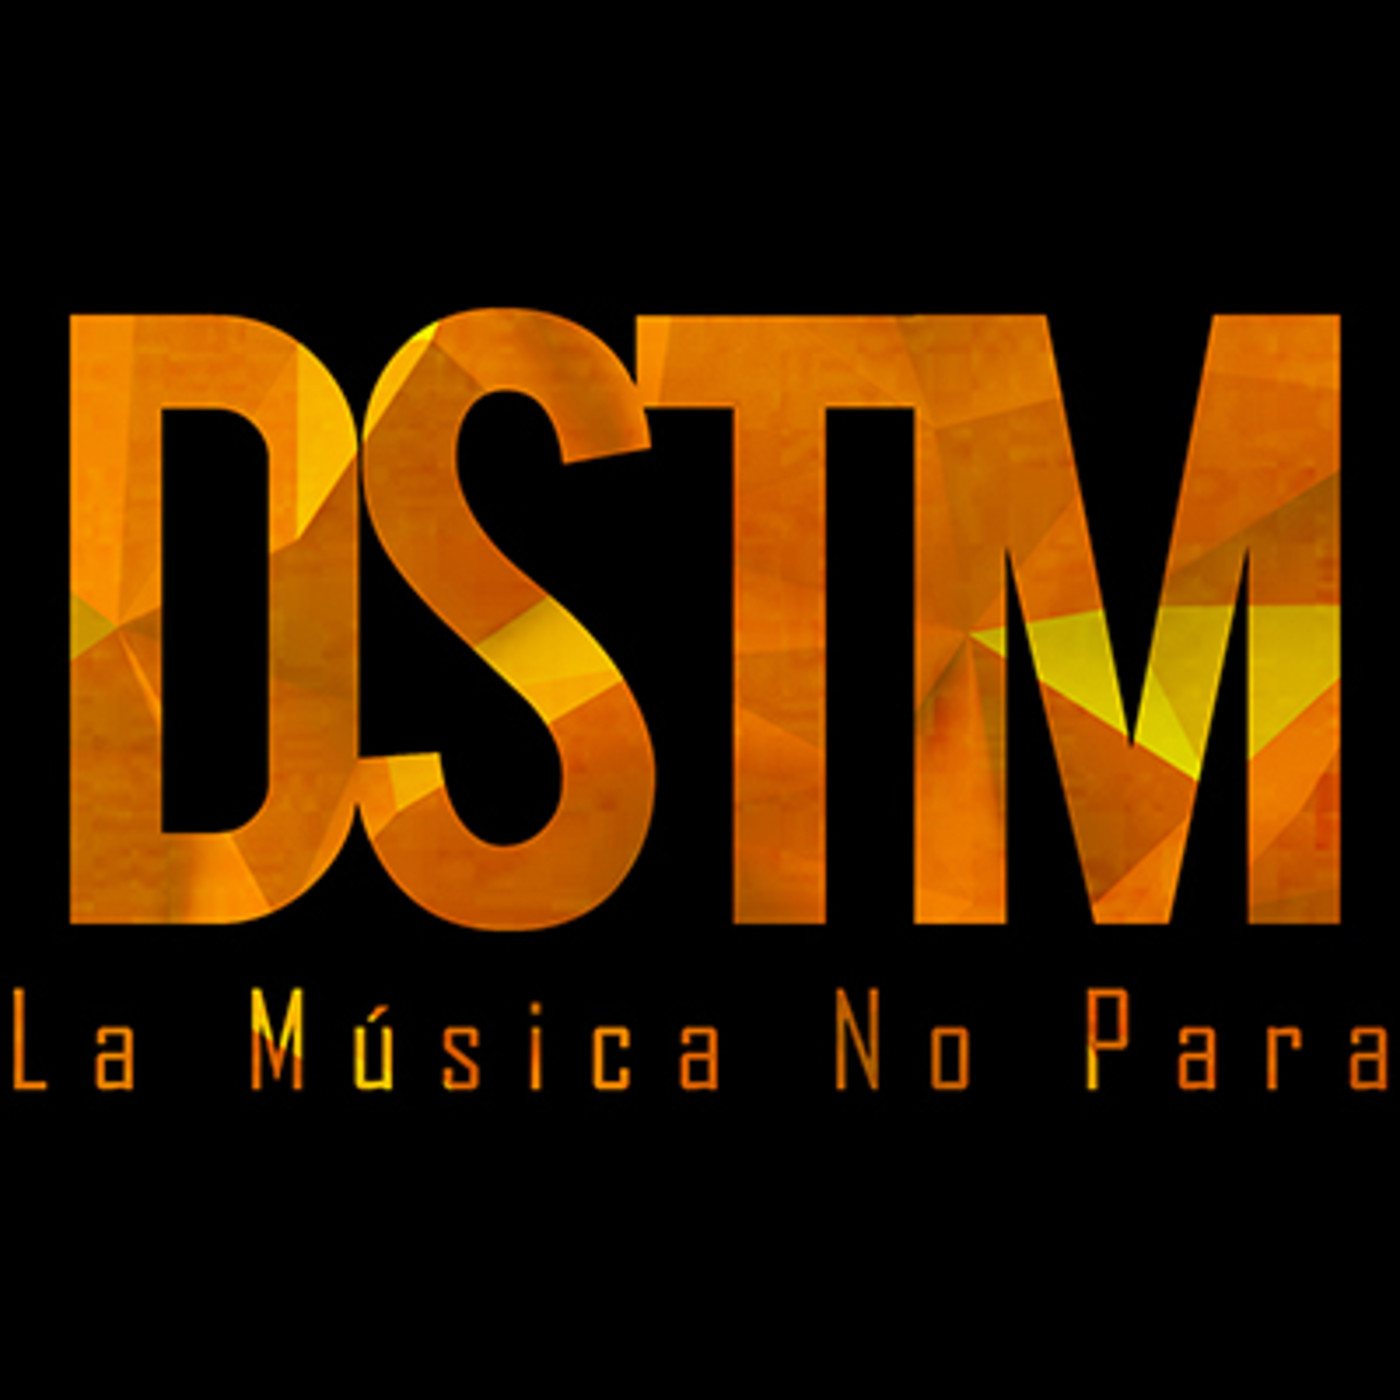 Luis Miguel Romances DSTM